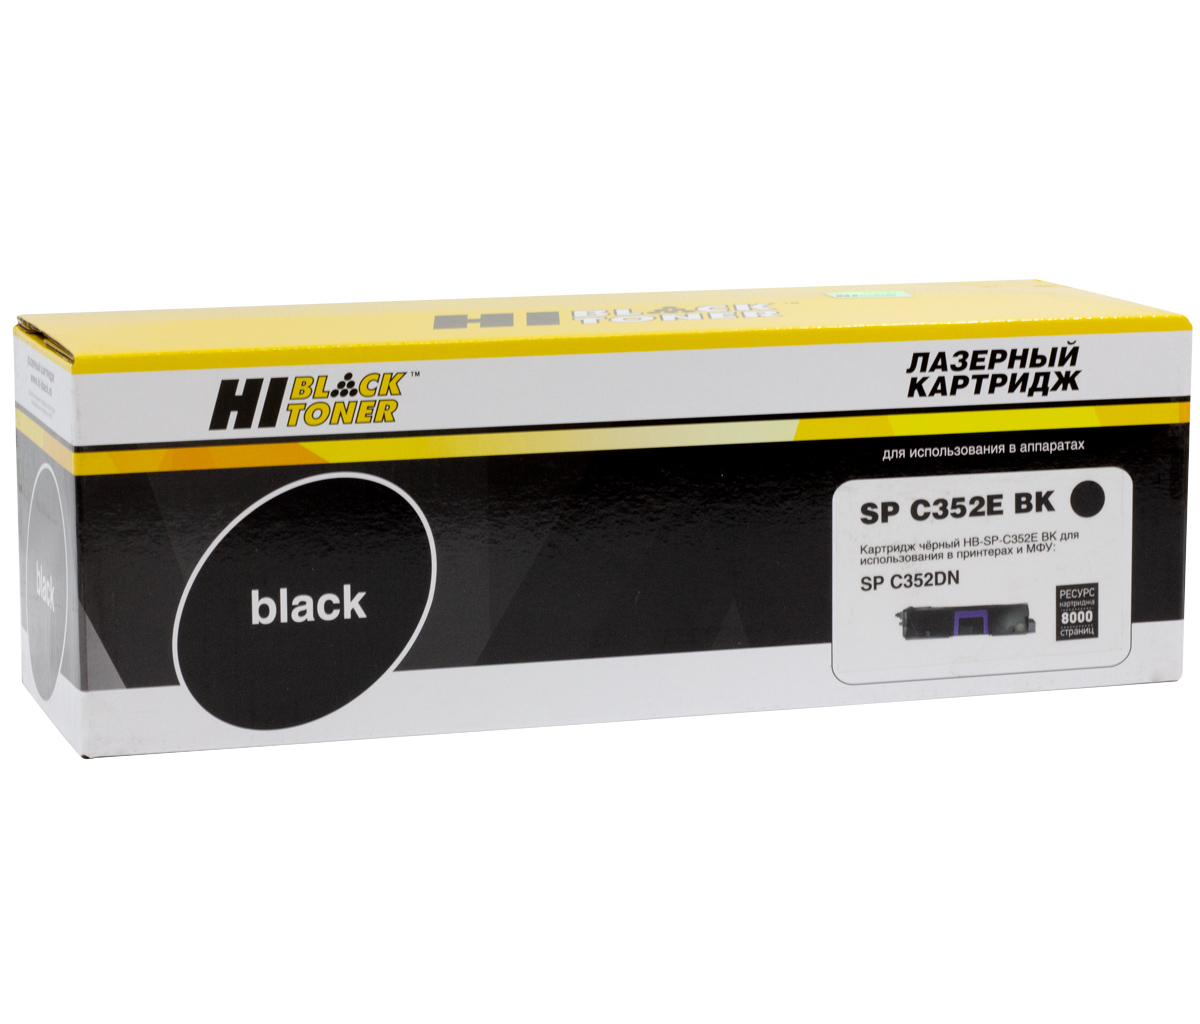 Тонер-картридж Hi-Black (HB-SPC352E BK) для Ricoh Aficio SPC352DN, Bk, 8K